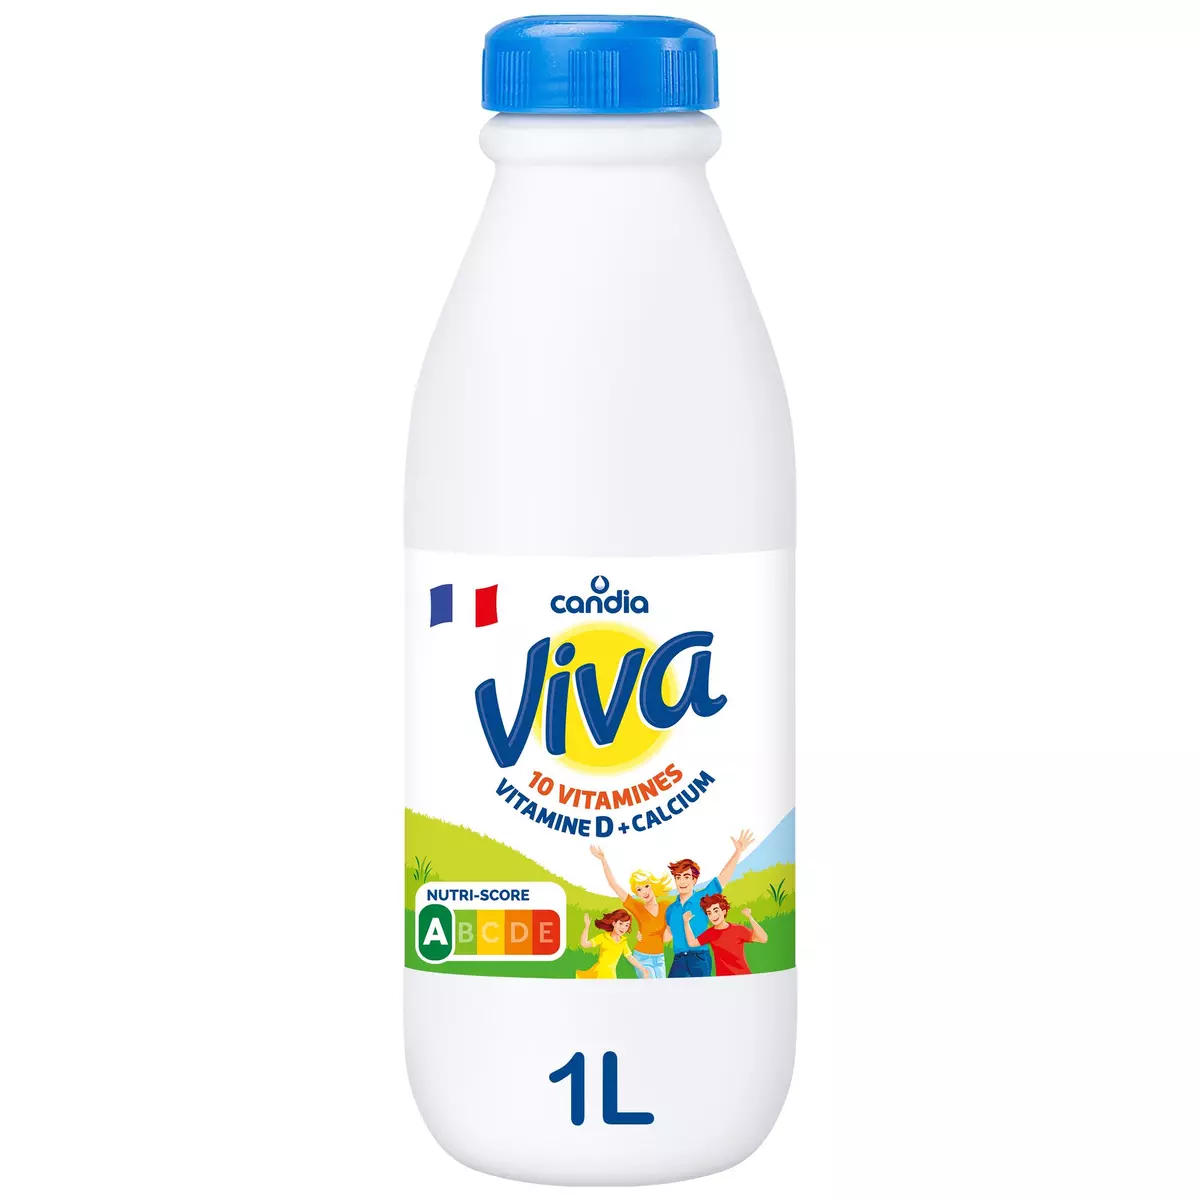 CANDIA Viva - Lait demi-écrémé UHT vitaminé 1L